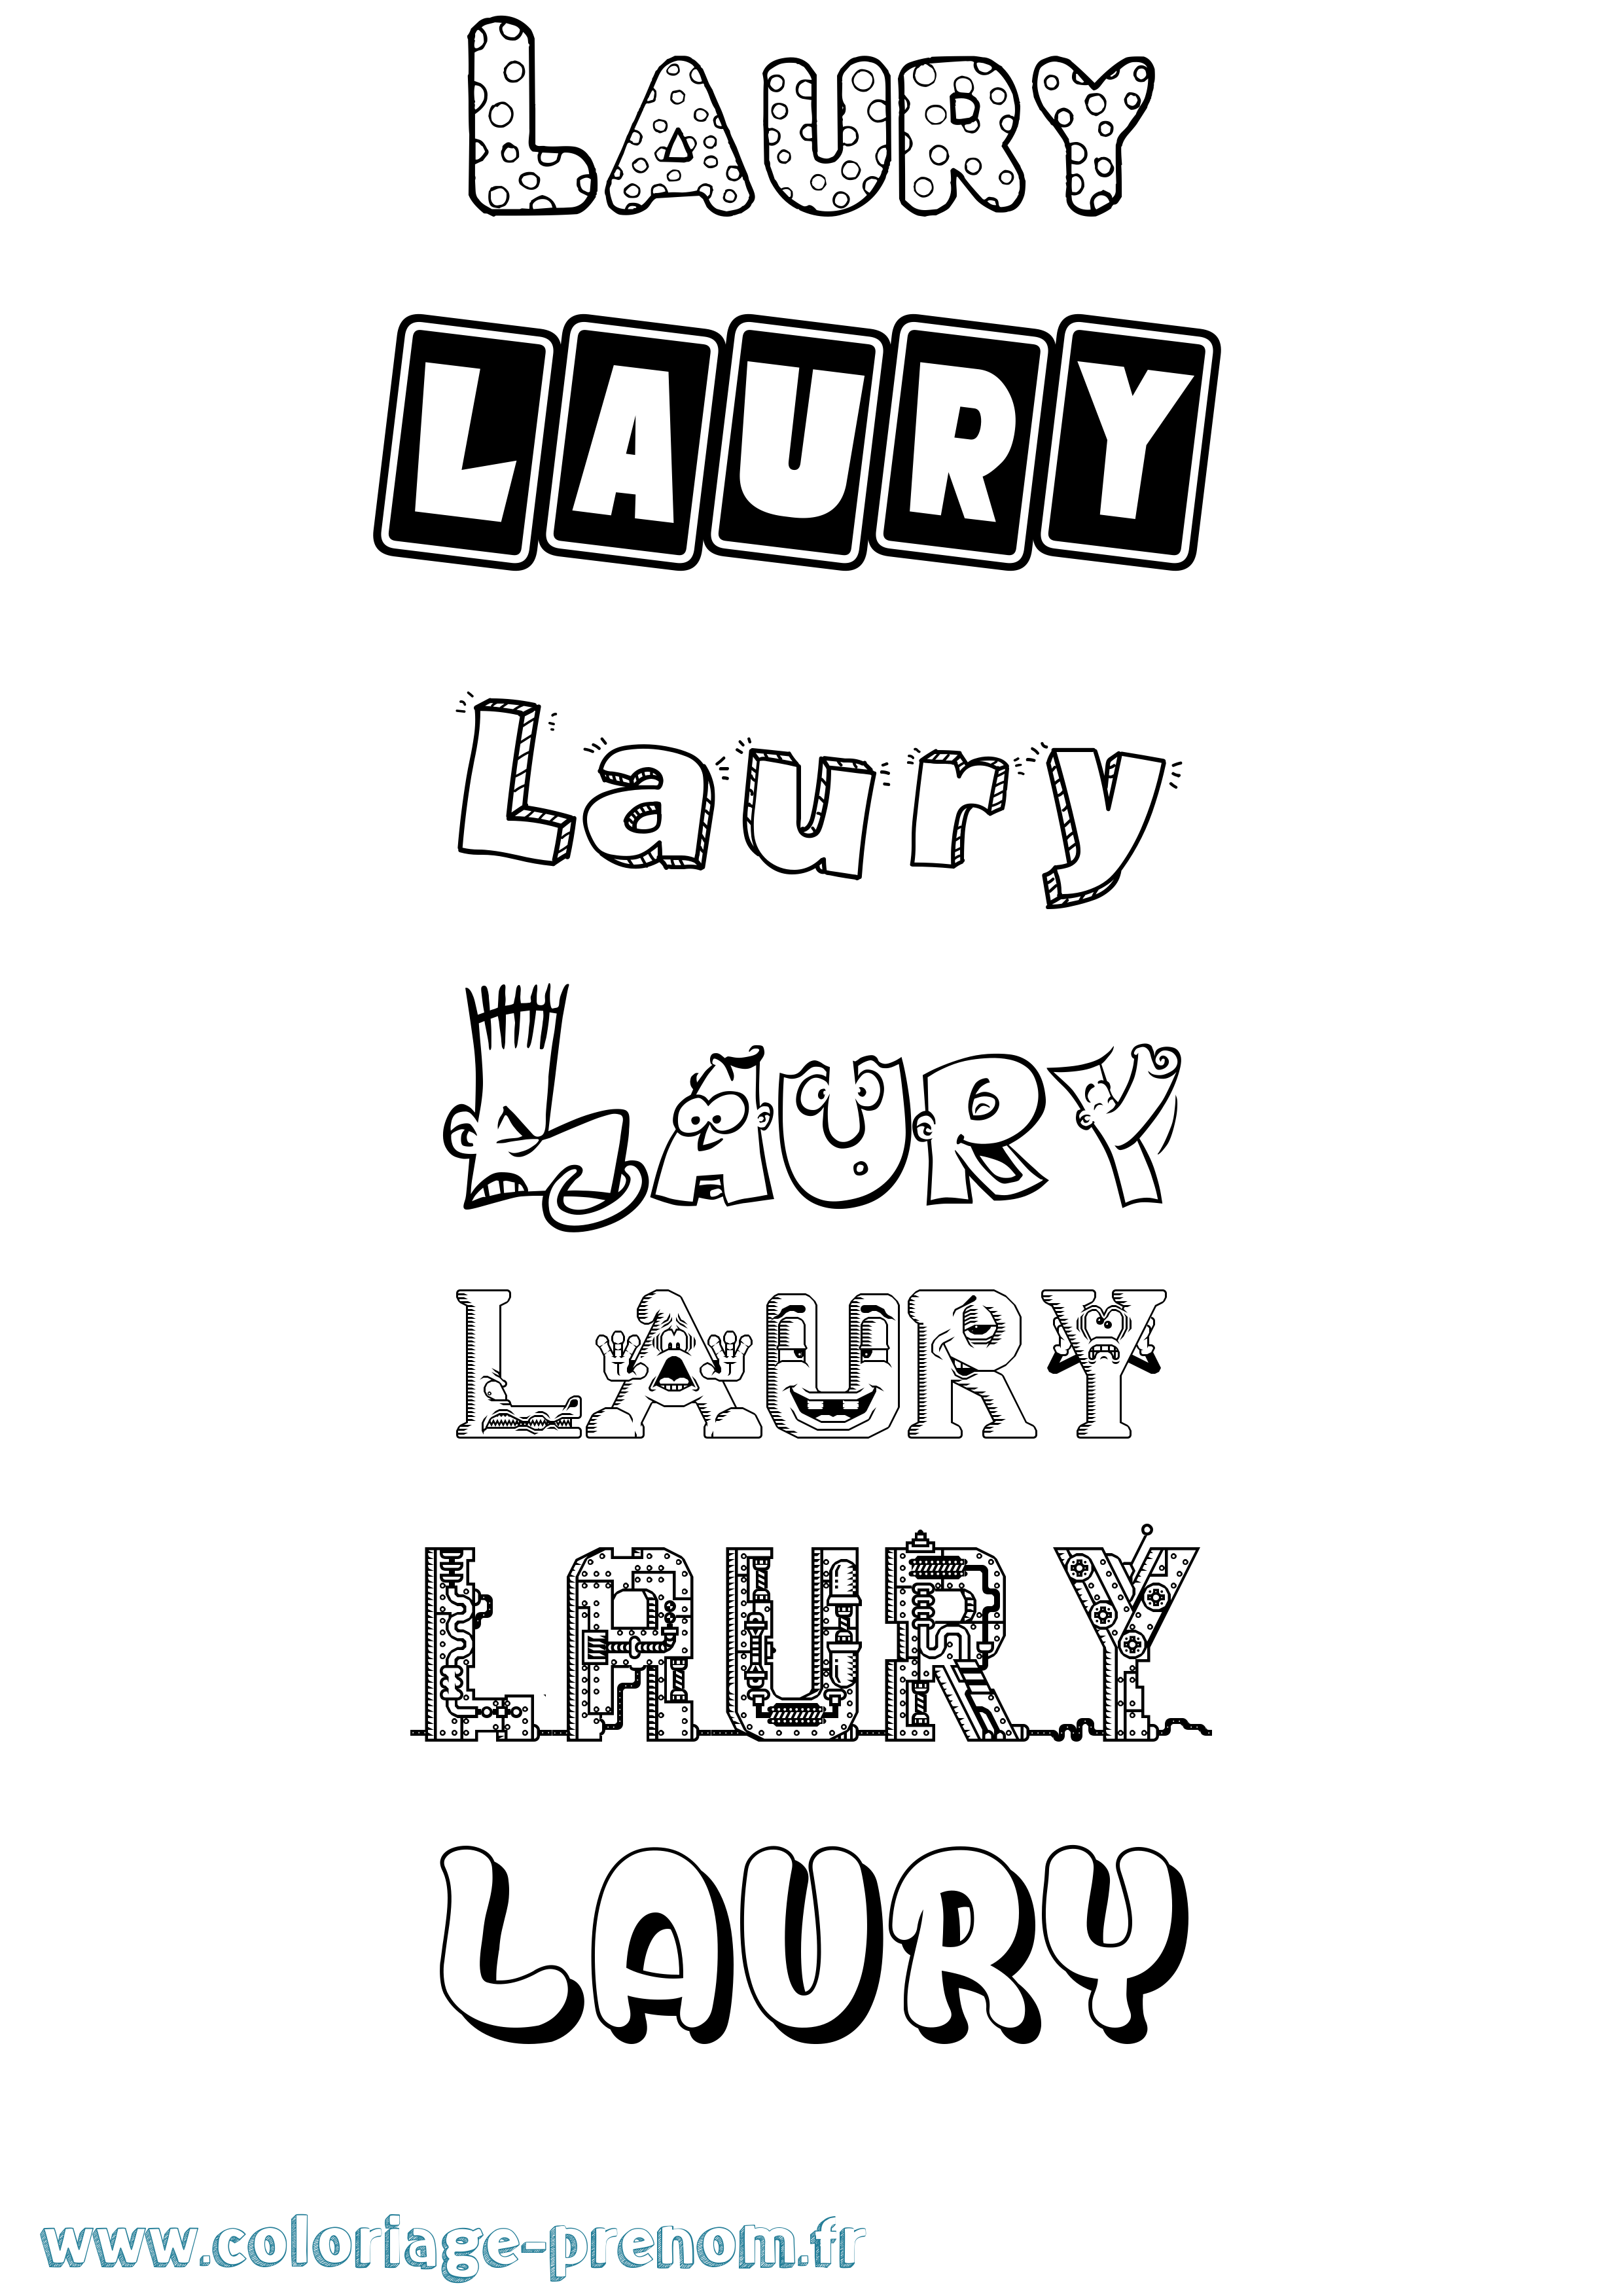 Coloriage prénom Laury Fun